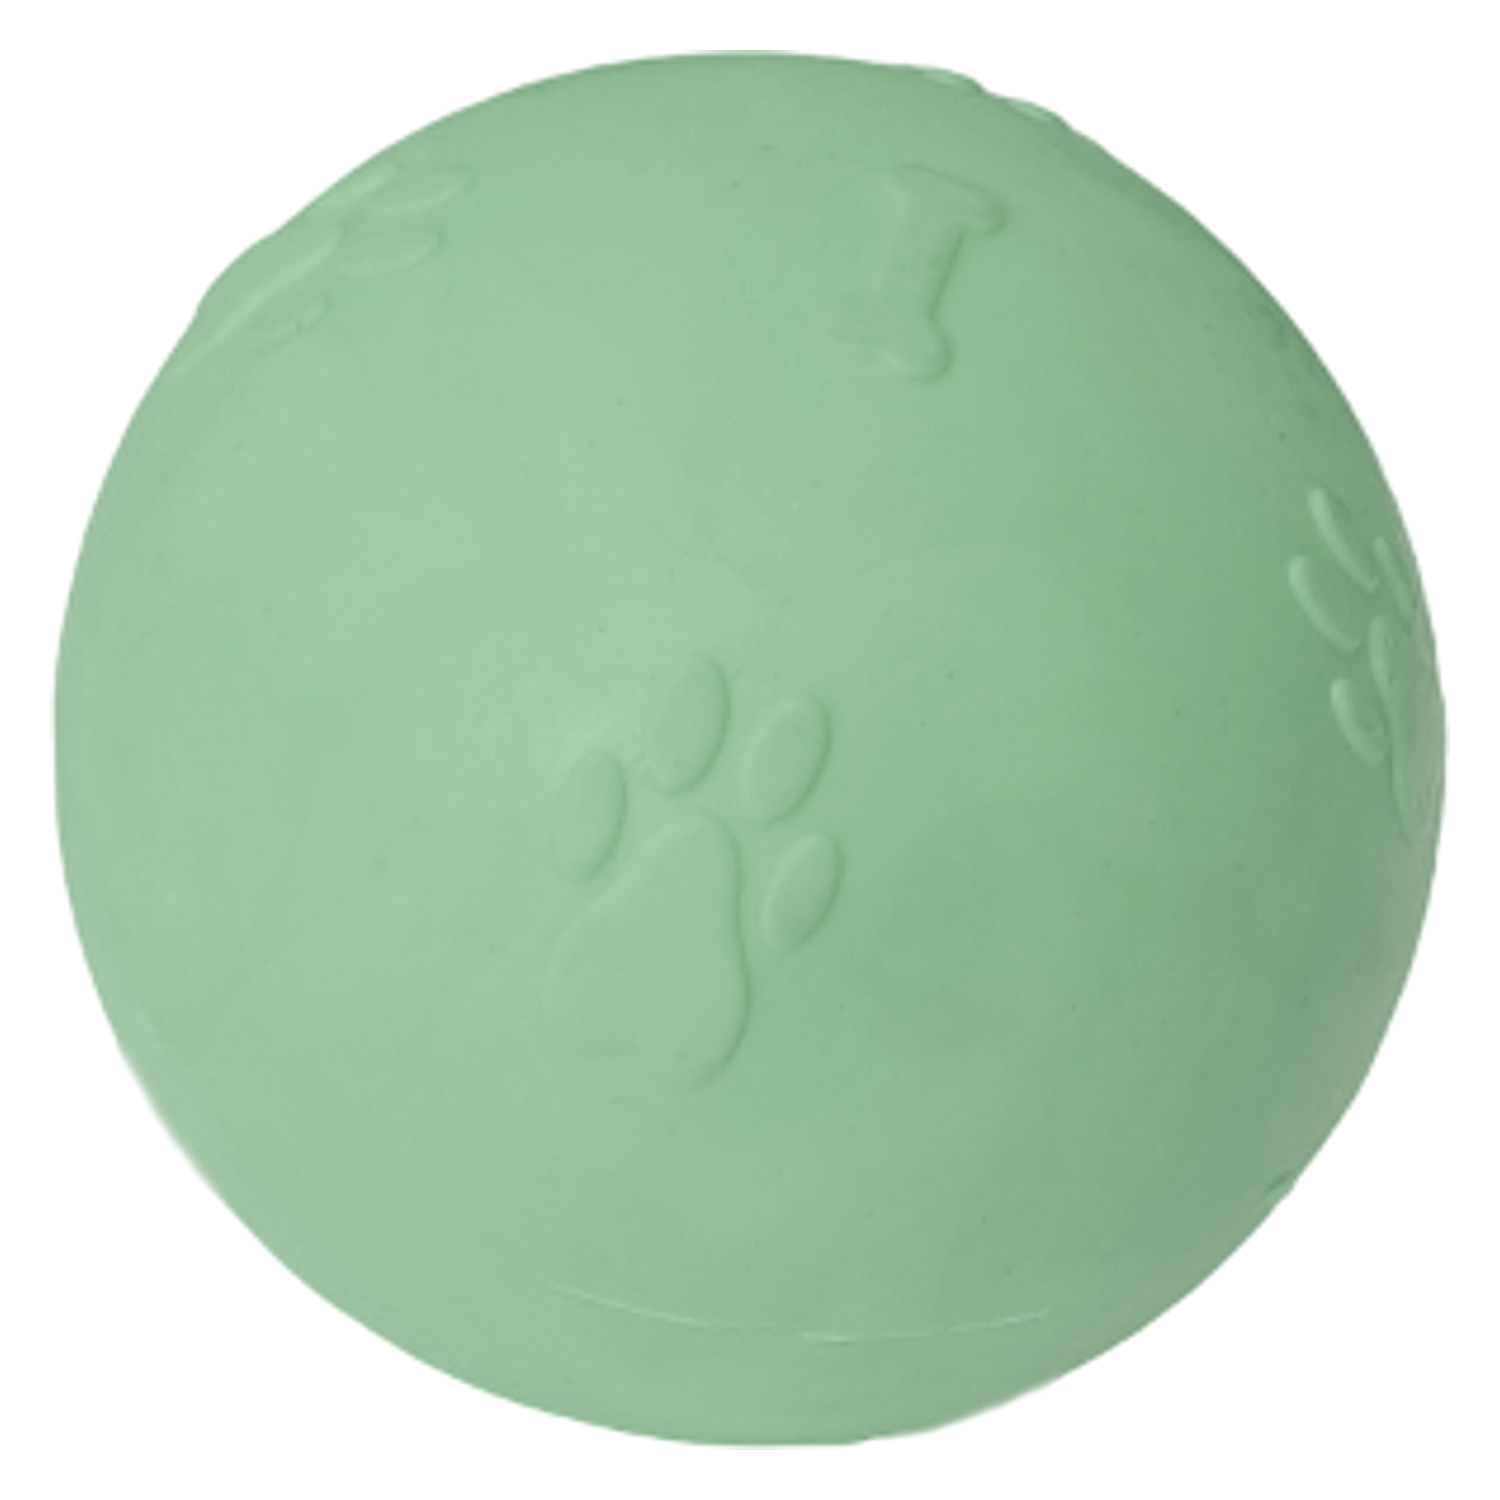 CLZ205 Pati Desenli Sert Köpek Oyun Topu 8 cm Large Yeşil